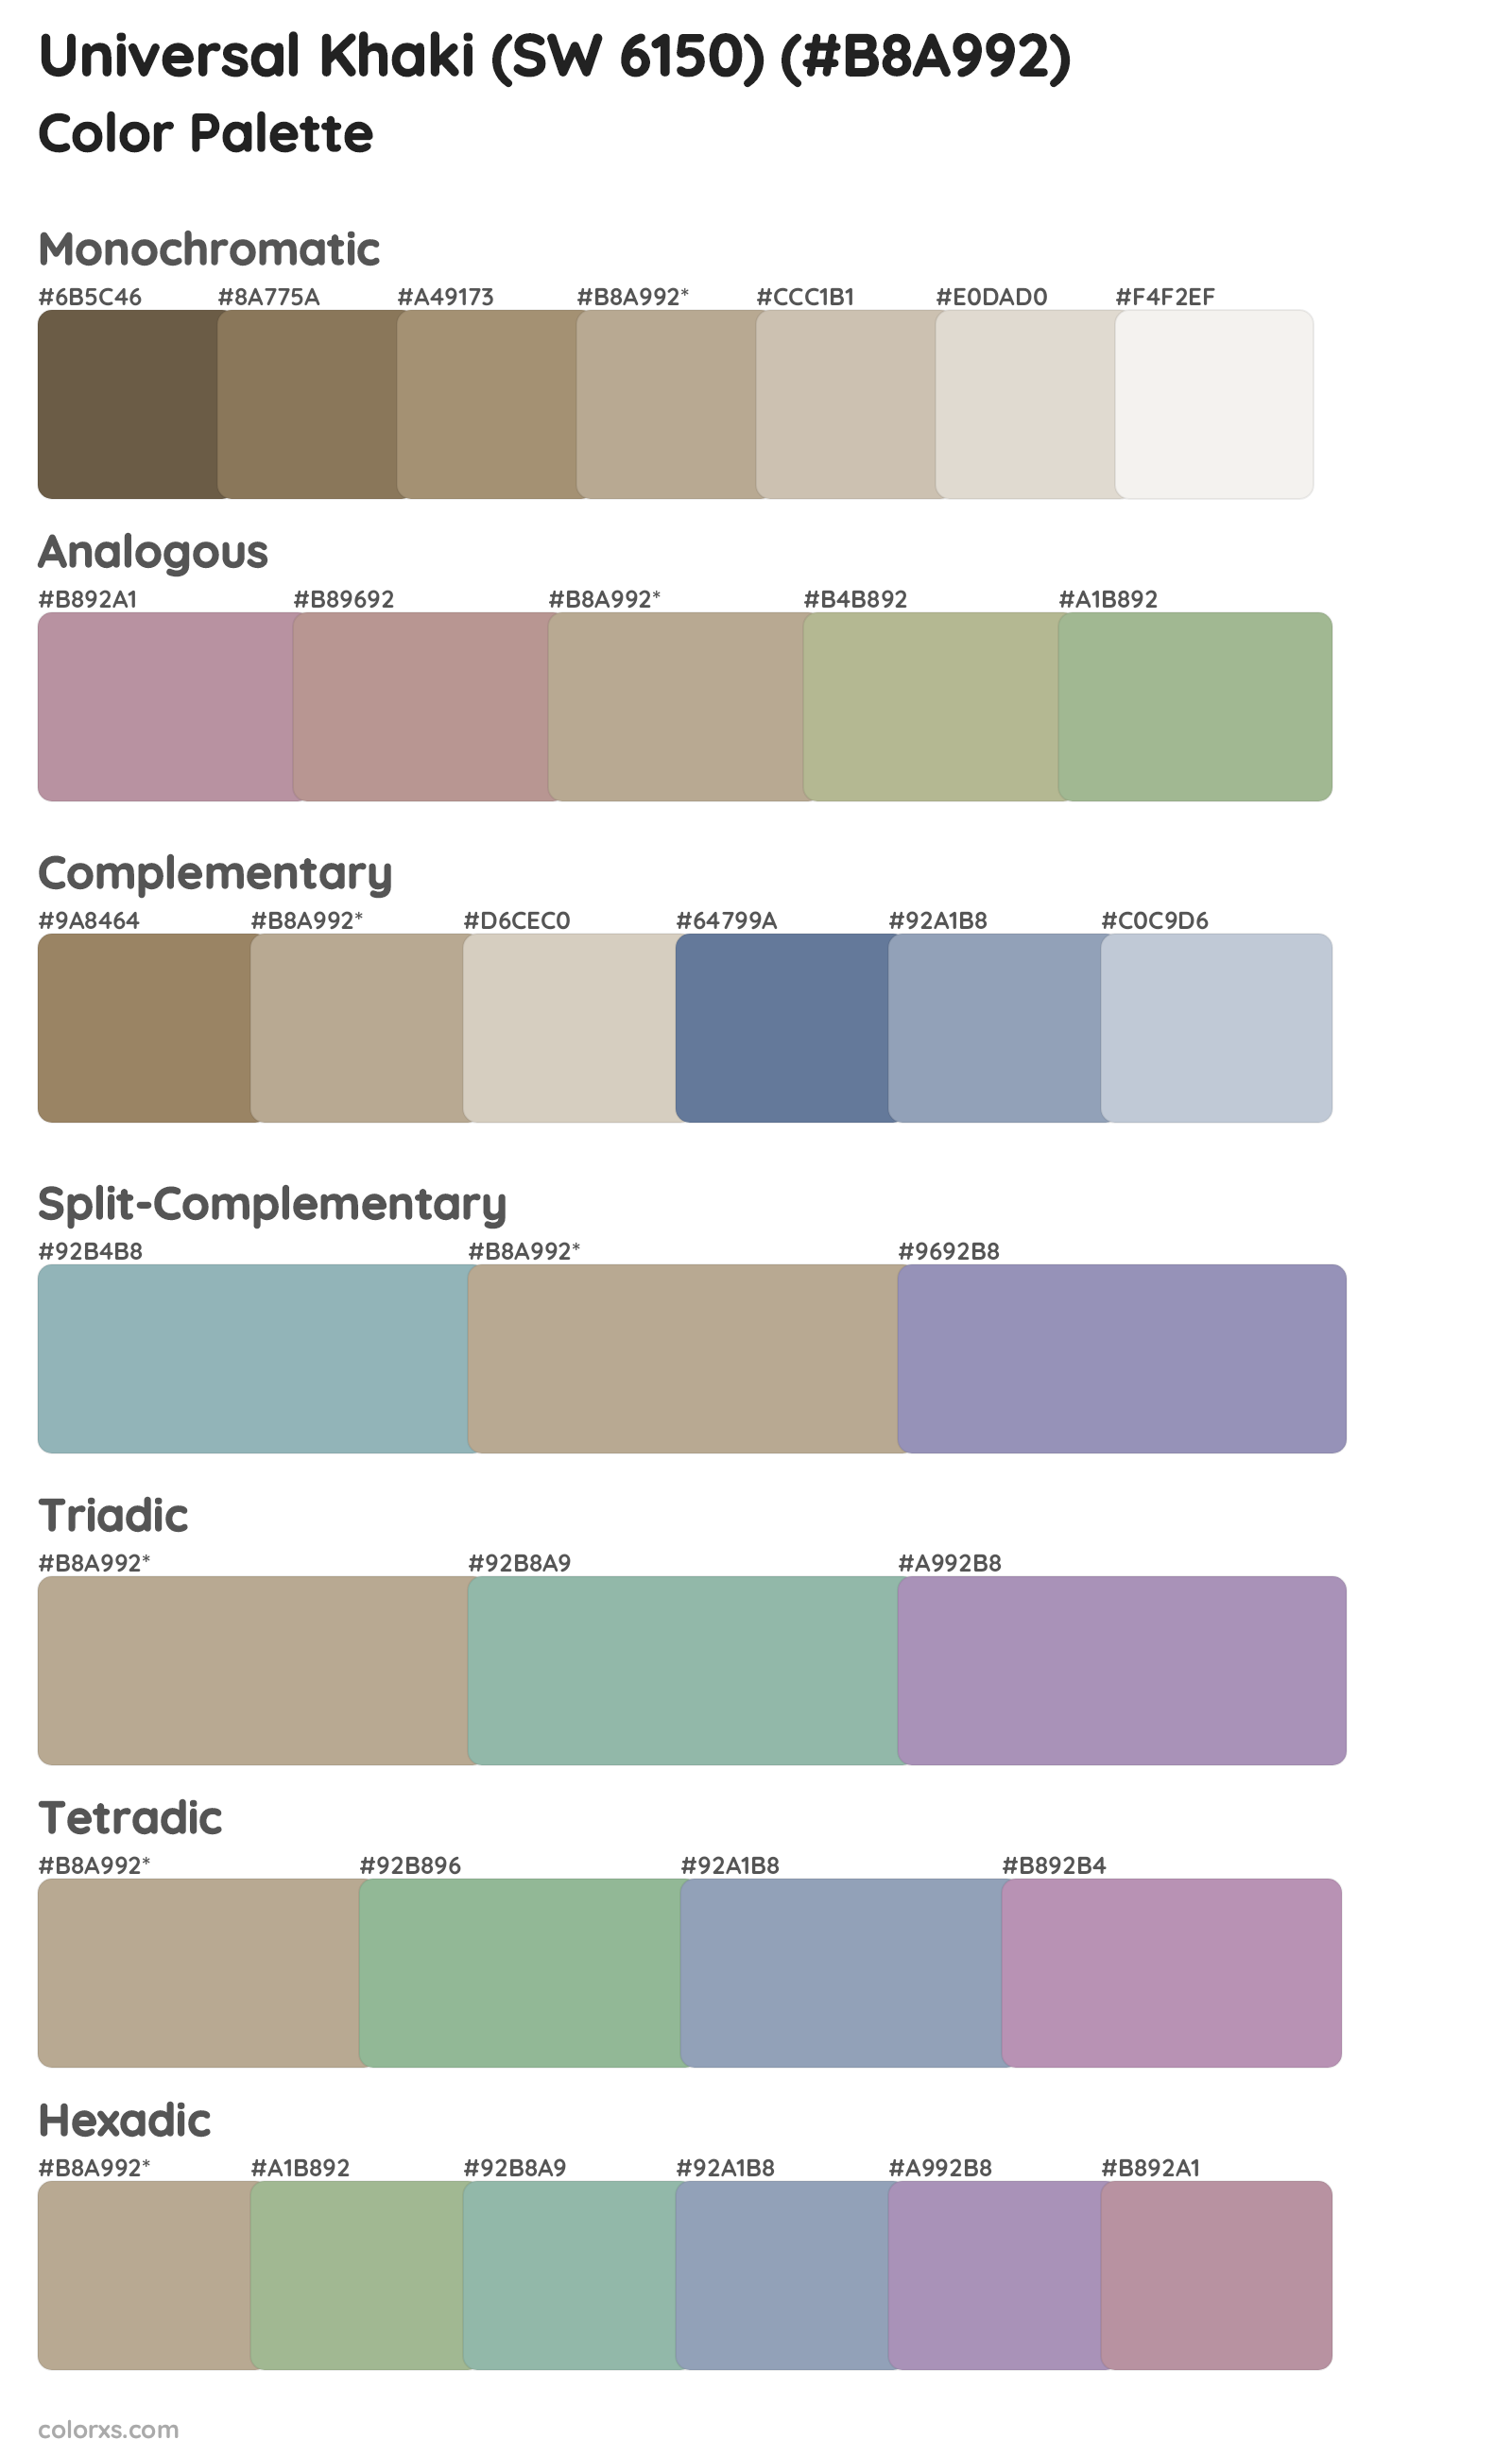 Universal Khaki (SW 6150) Color Scheme Palettes